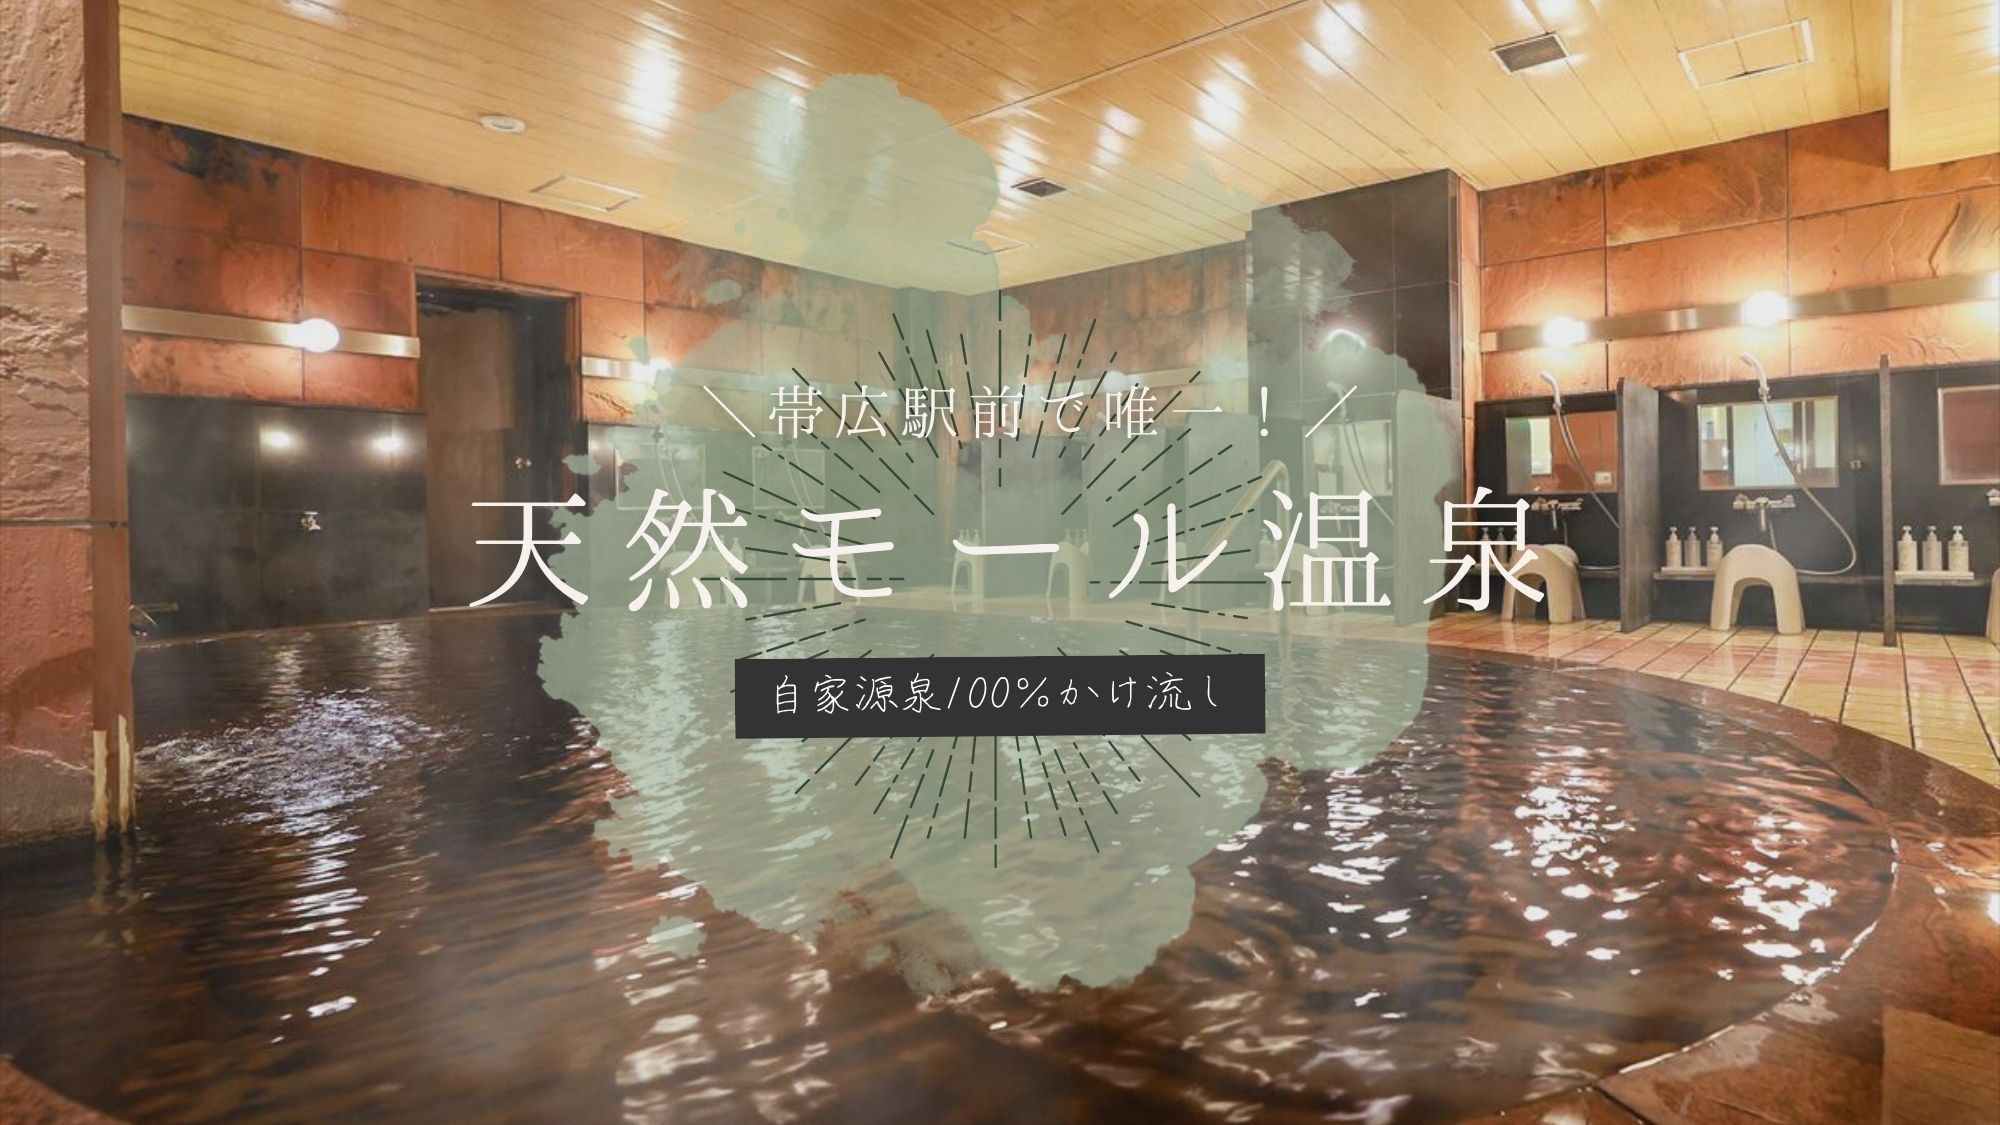 【サーロインステーキ鍋】北海道の雄大な大地で育った『十勝若牛』と『自家源泉かけ流し天然モール温泉』